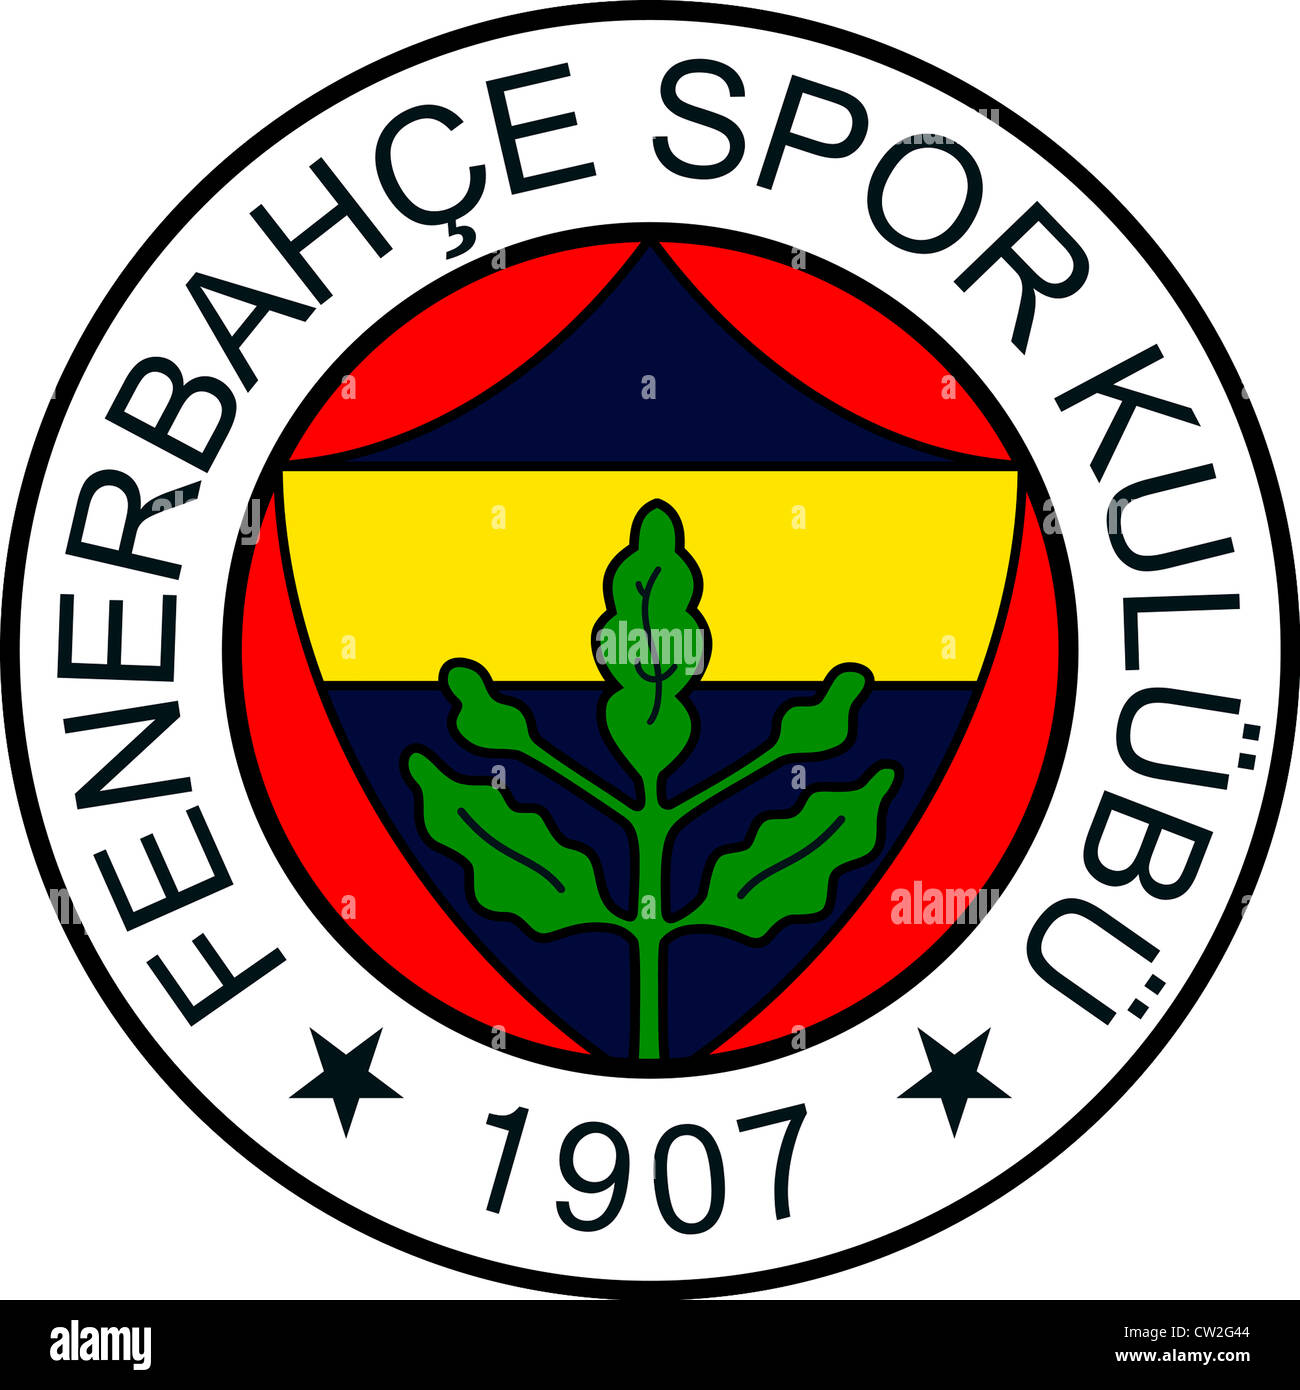 Il logo del gioco del calcio turco team Fenerbahce Istanbul Foto stock -  Alamy